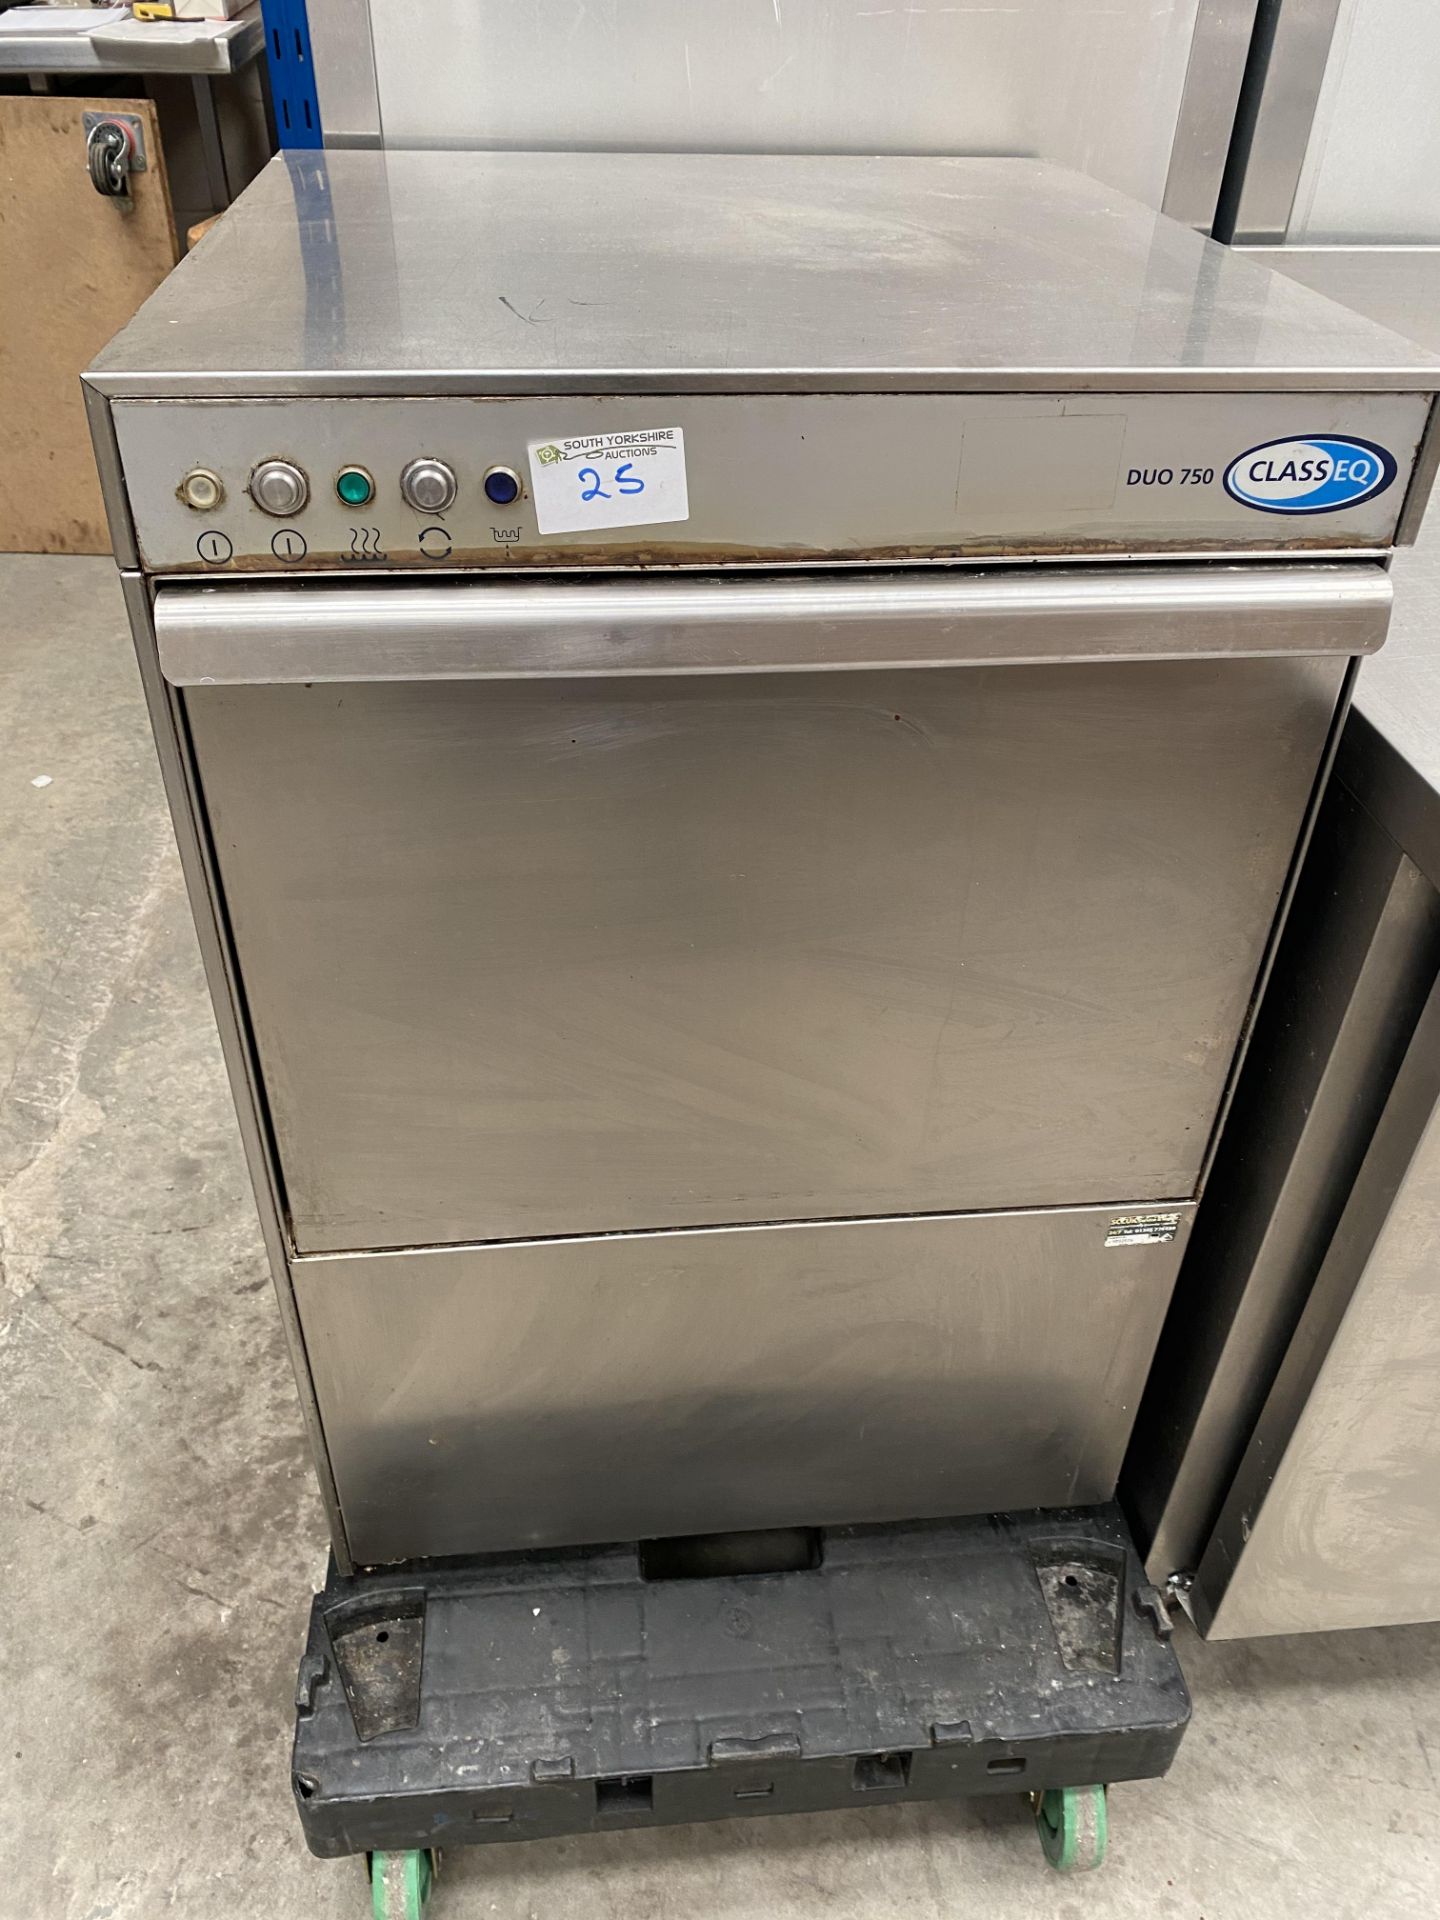 Classeq Duo 750 Dishwasher